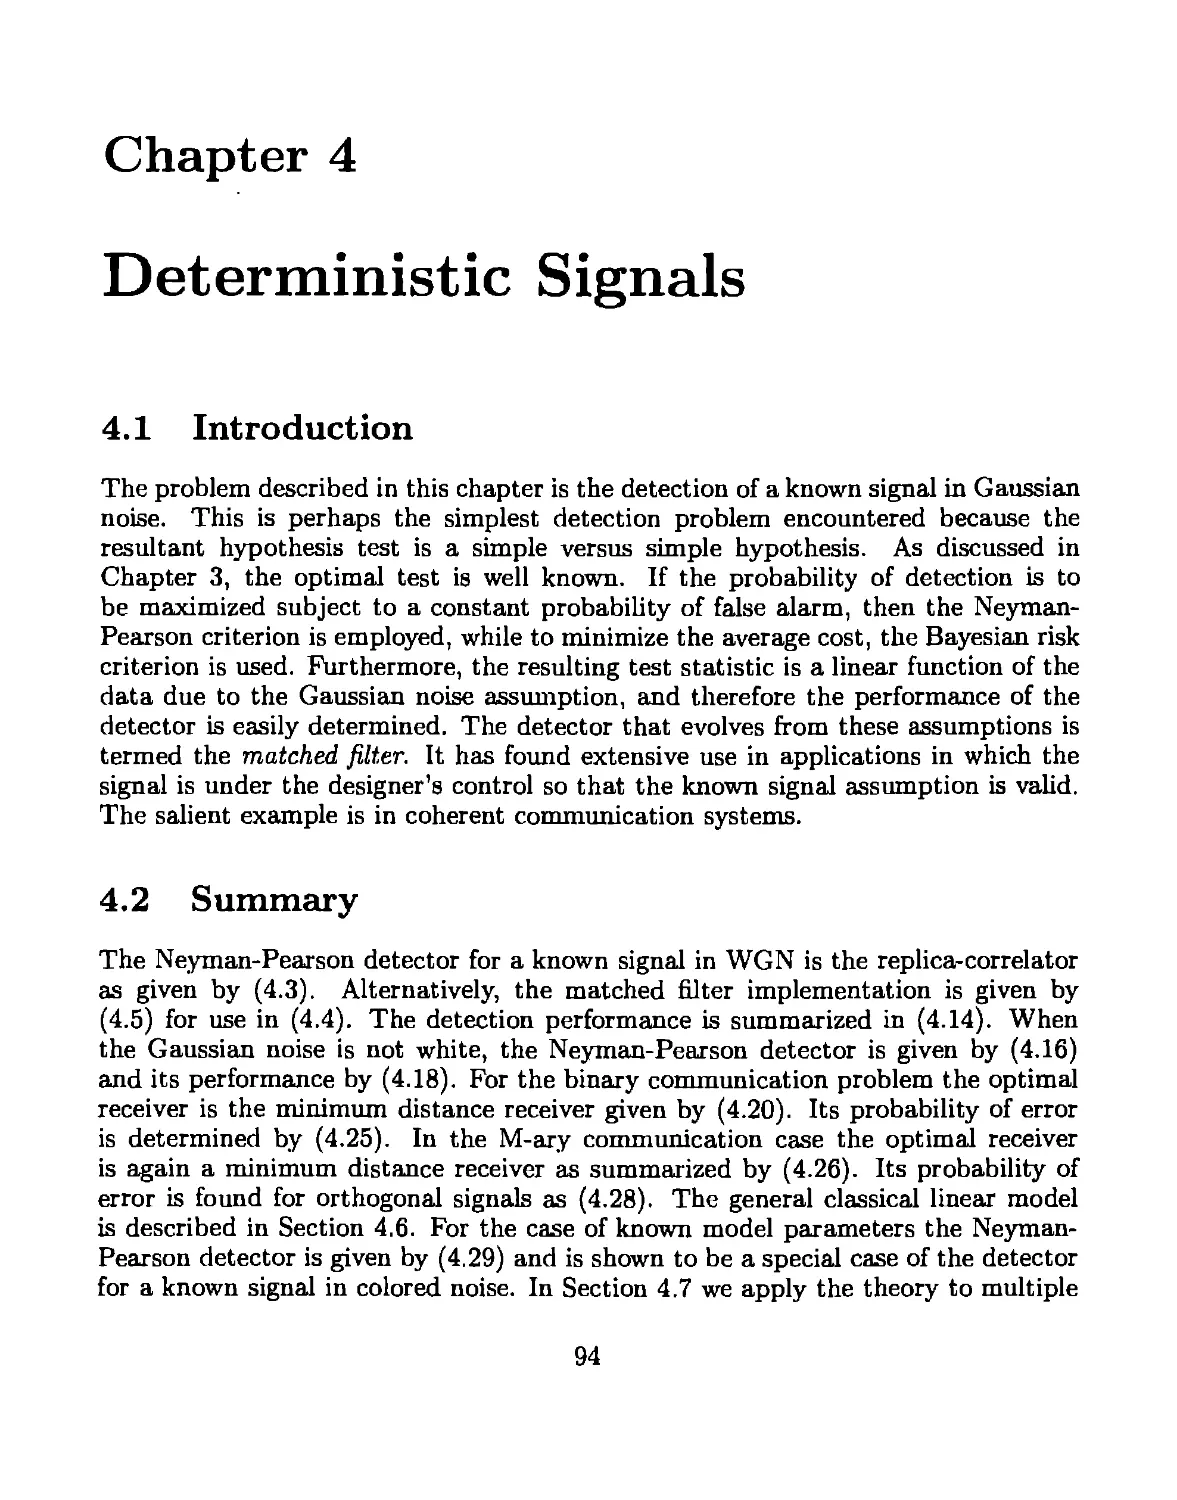 4 Deterministic Signals
4.2 Summary